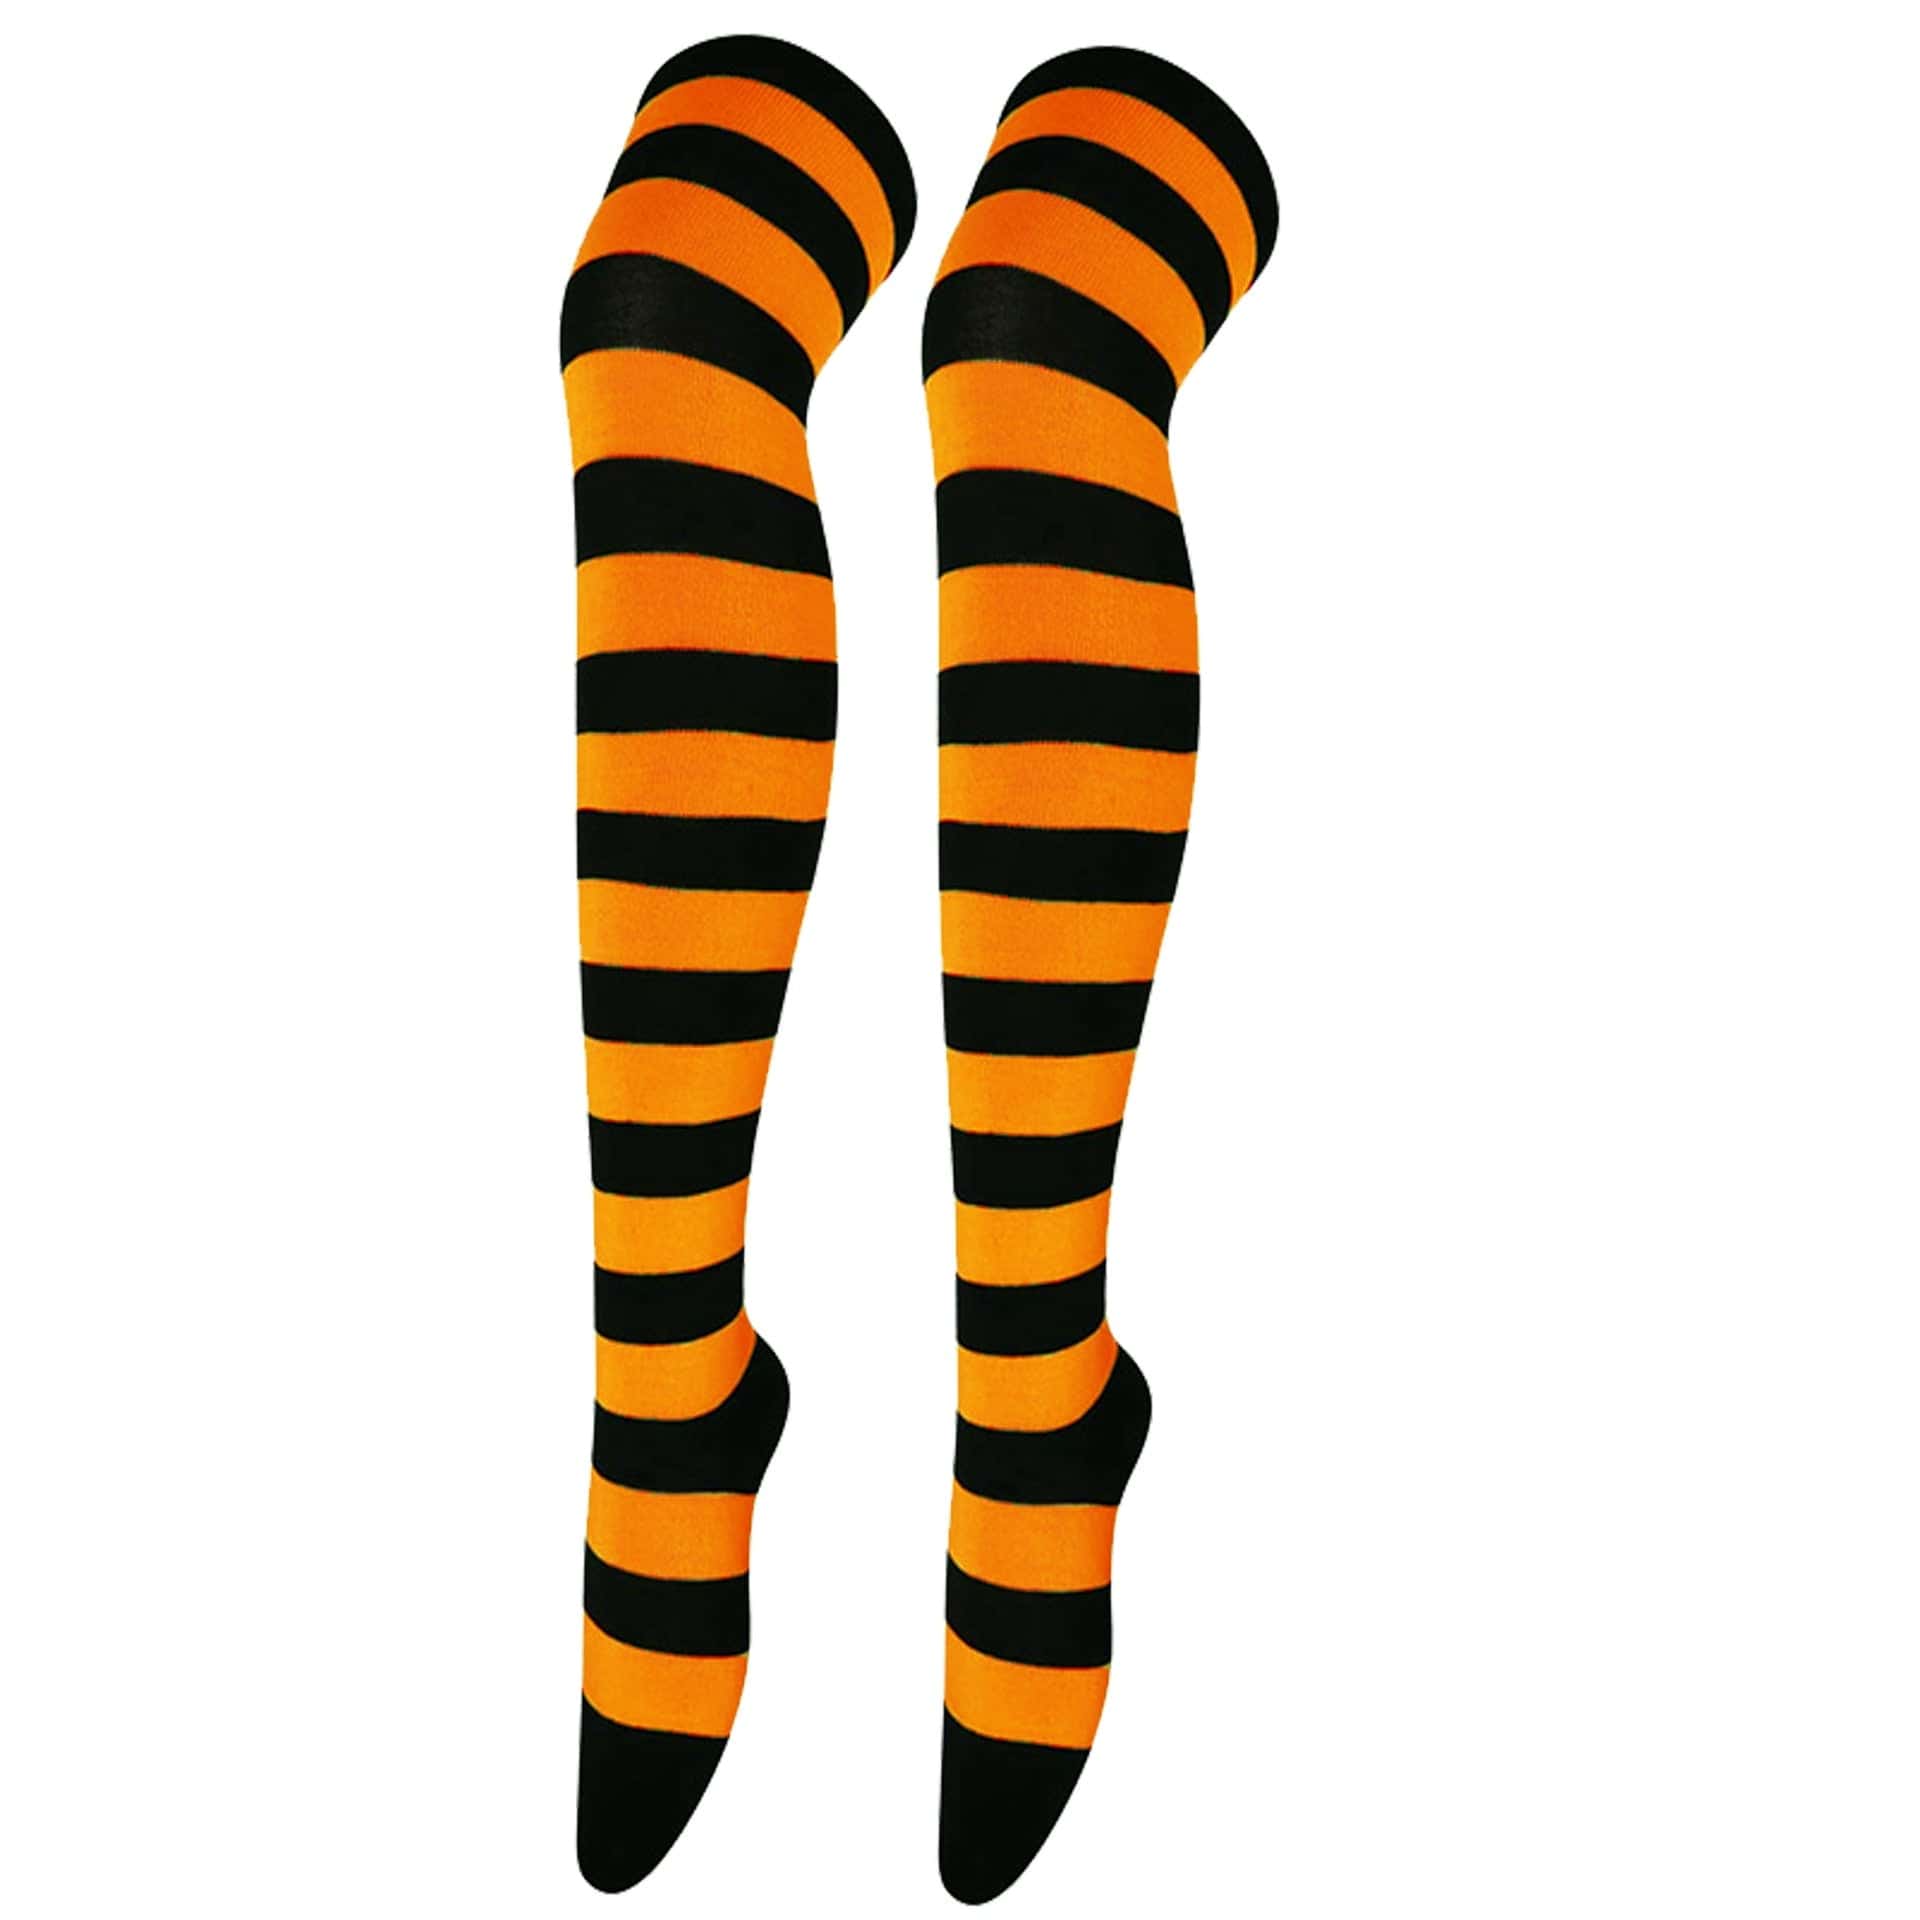 My Socks Noir & Orange / Unique Chaussettes Hautes Femme Fantaisie